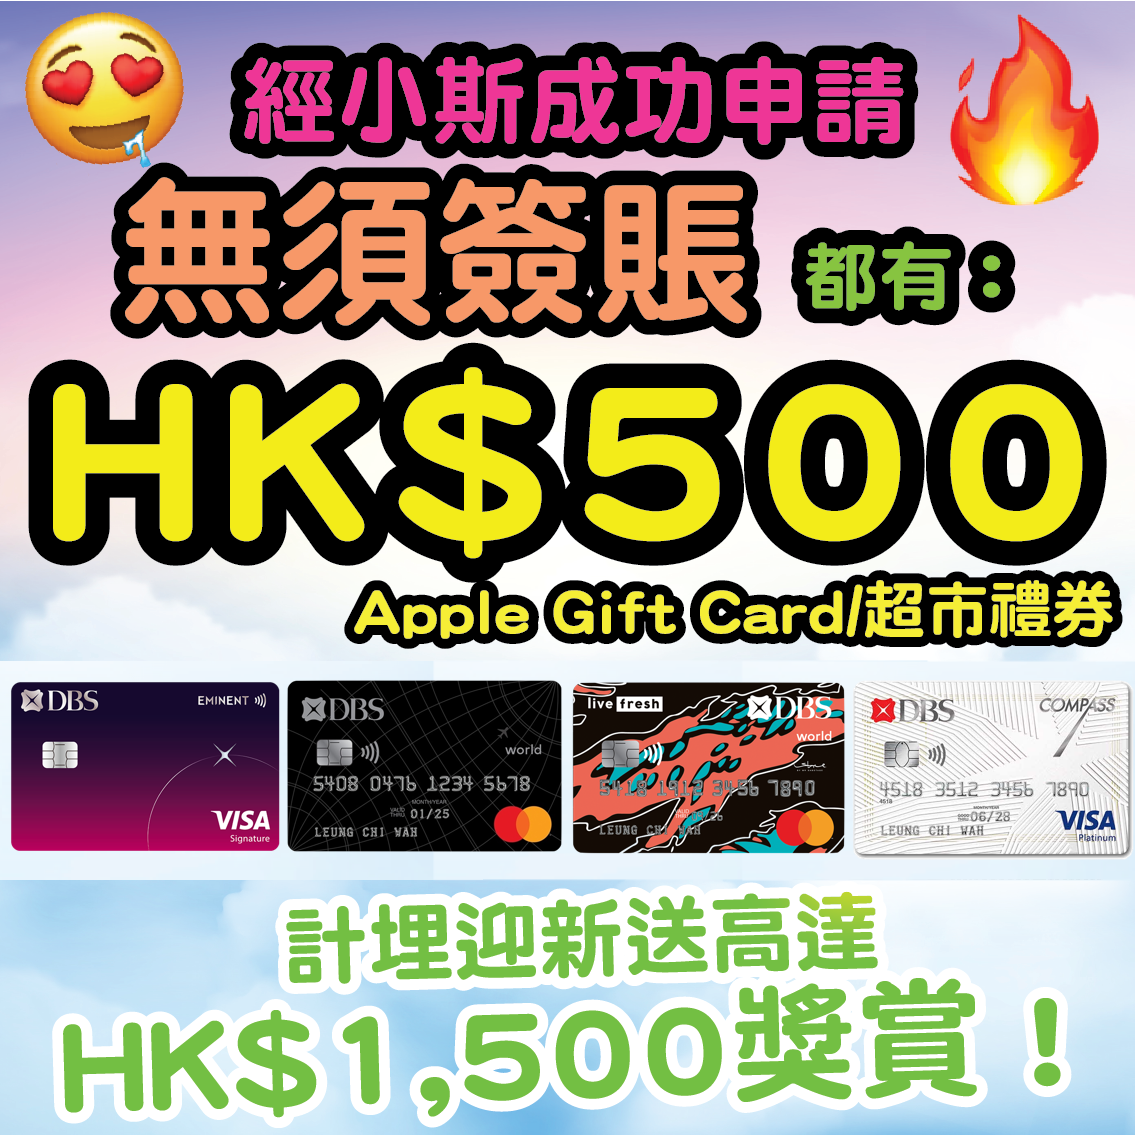 第二期消費券唔夠用，小斯幫到你【🔥🔥🔥限時優惠❗只限10月6日至10月15日申請❗新一輪DBS送錢❗經小斯申請指定DBS信用卡，先有 Card+ app 額外HK$100一扣即享^，批卡後一個月內只需簽夠HK$300再就送HK$800 Apple Gift Card 或 超市禮券🔥🔥🔥】計埋迎新有合共高達HK$1,900❗DBS Eminent Card食飯/買運動服裝/做gym/body check/買眼鏡5%回贈❗DBS Live Fresh信用卡網購高達6%回贈❗DBS COMPASS VISA逢星期三全港超市/淘寶更有9折❗